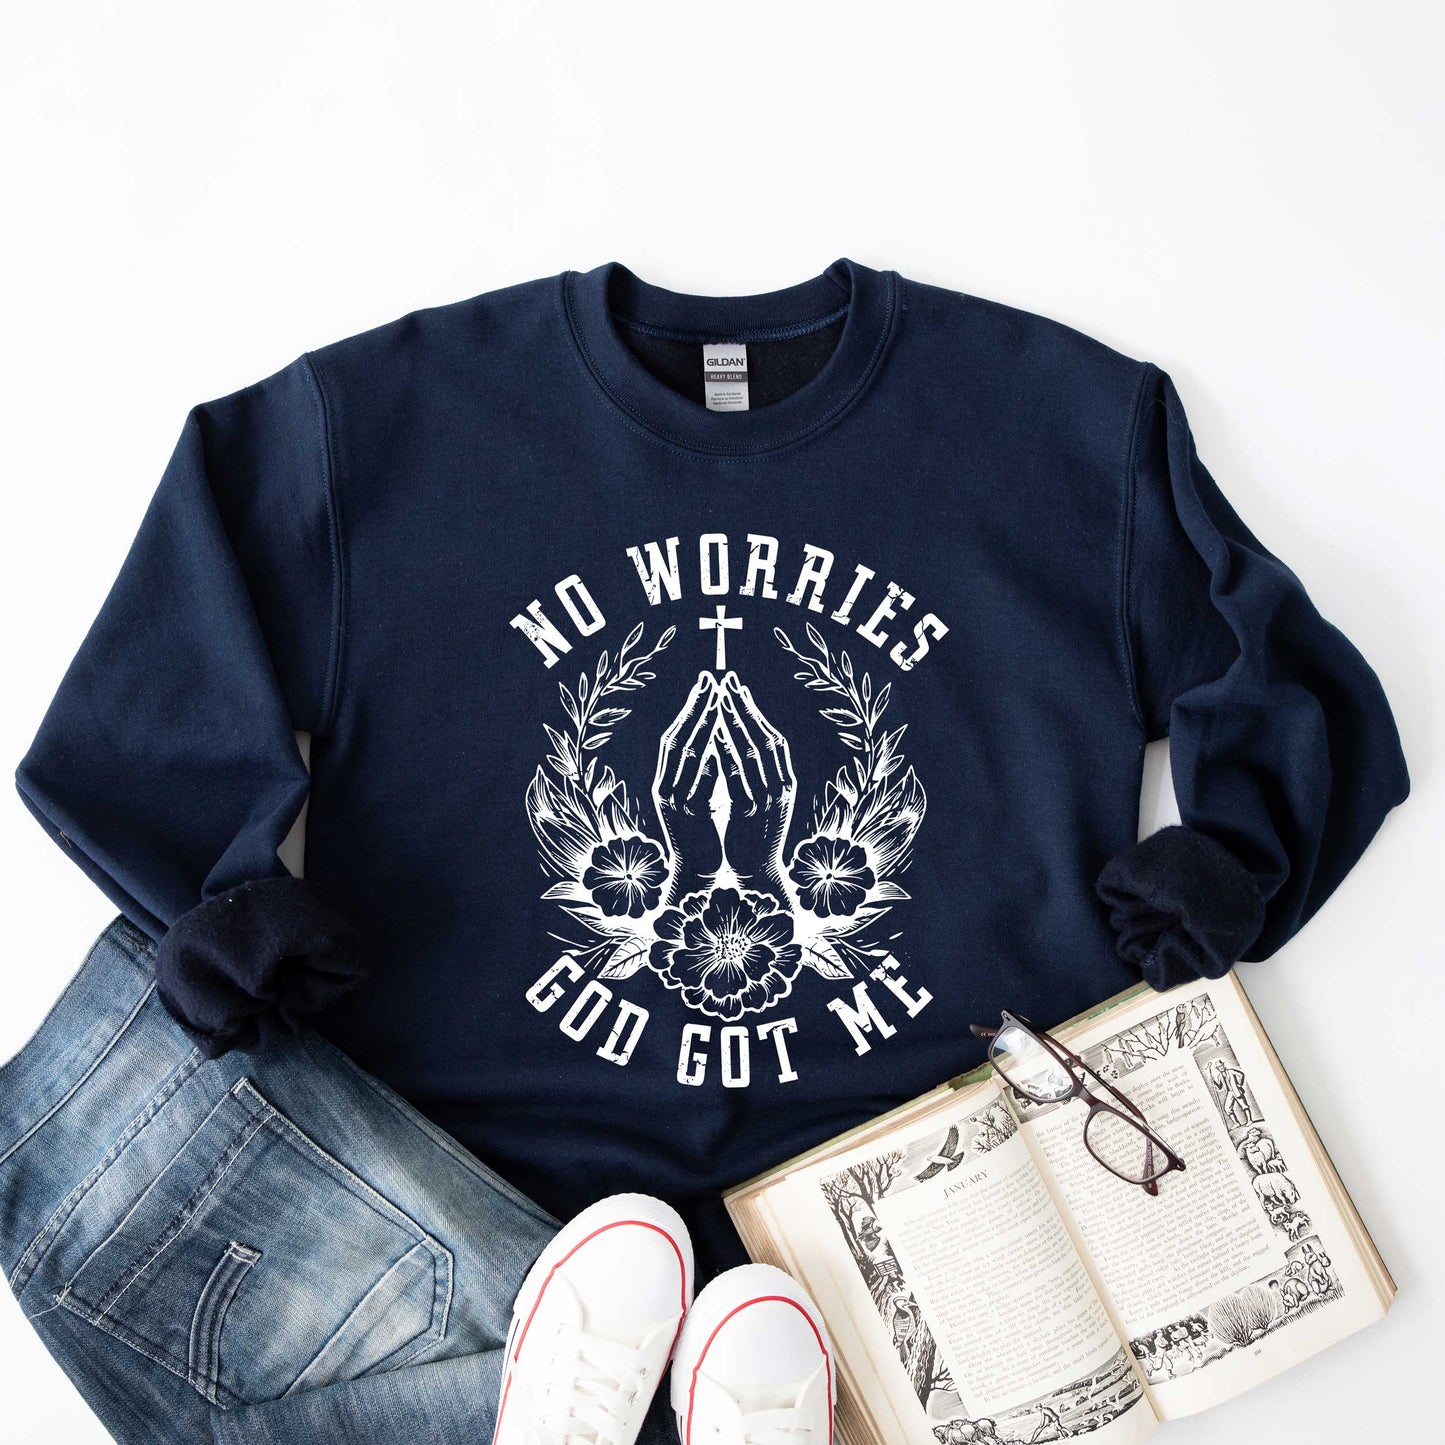 No Worries Cross | Sweatshirt